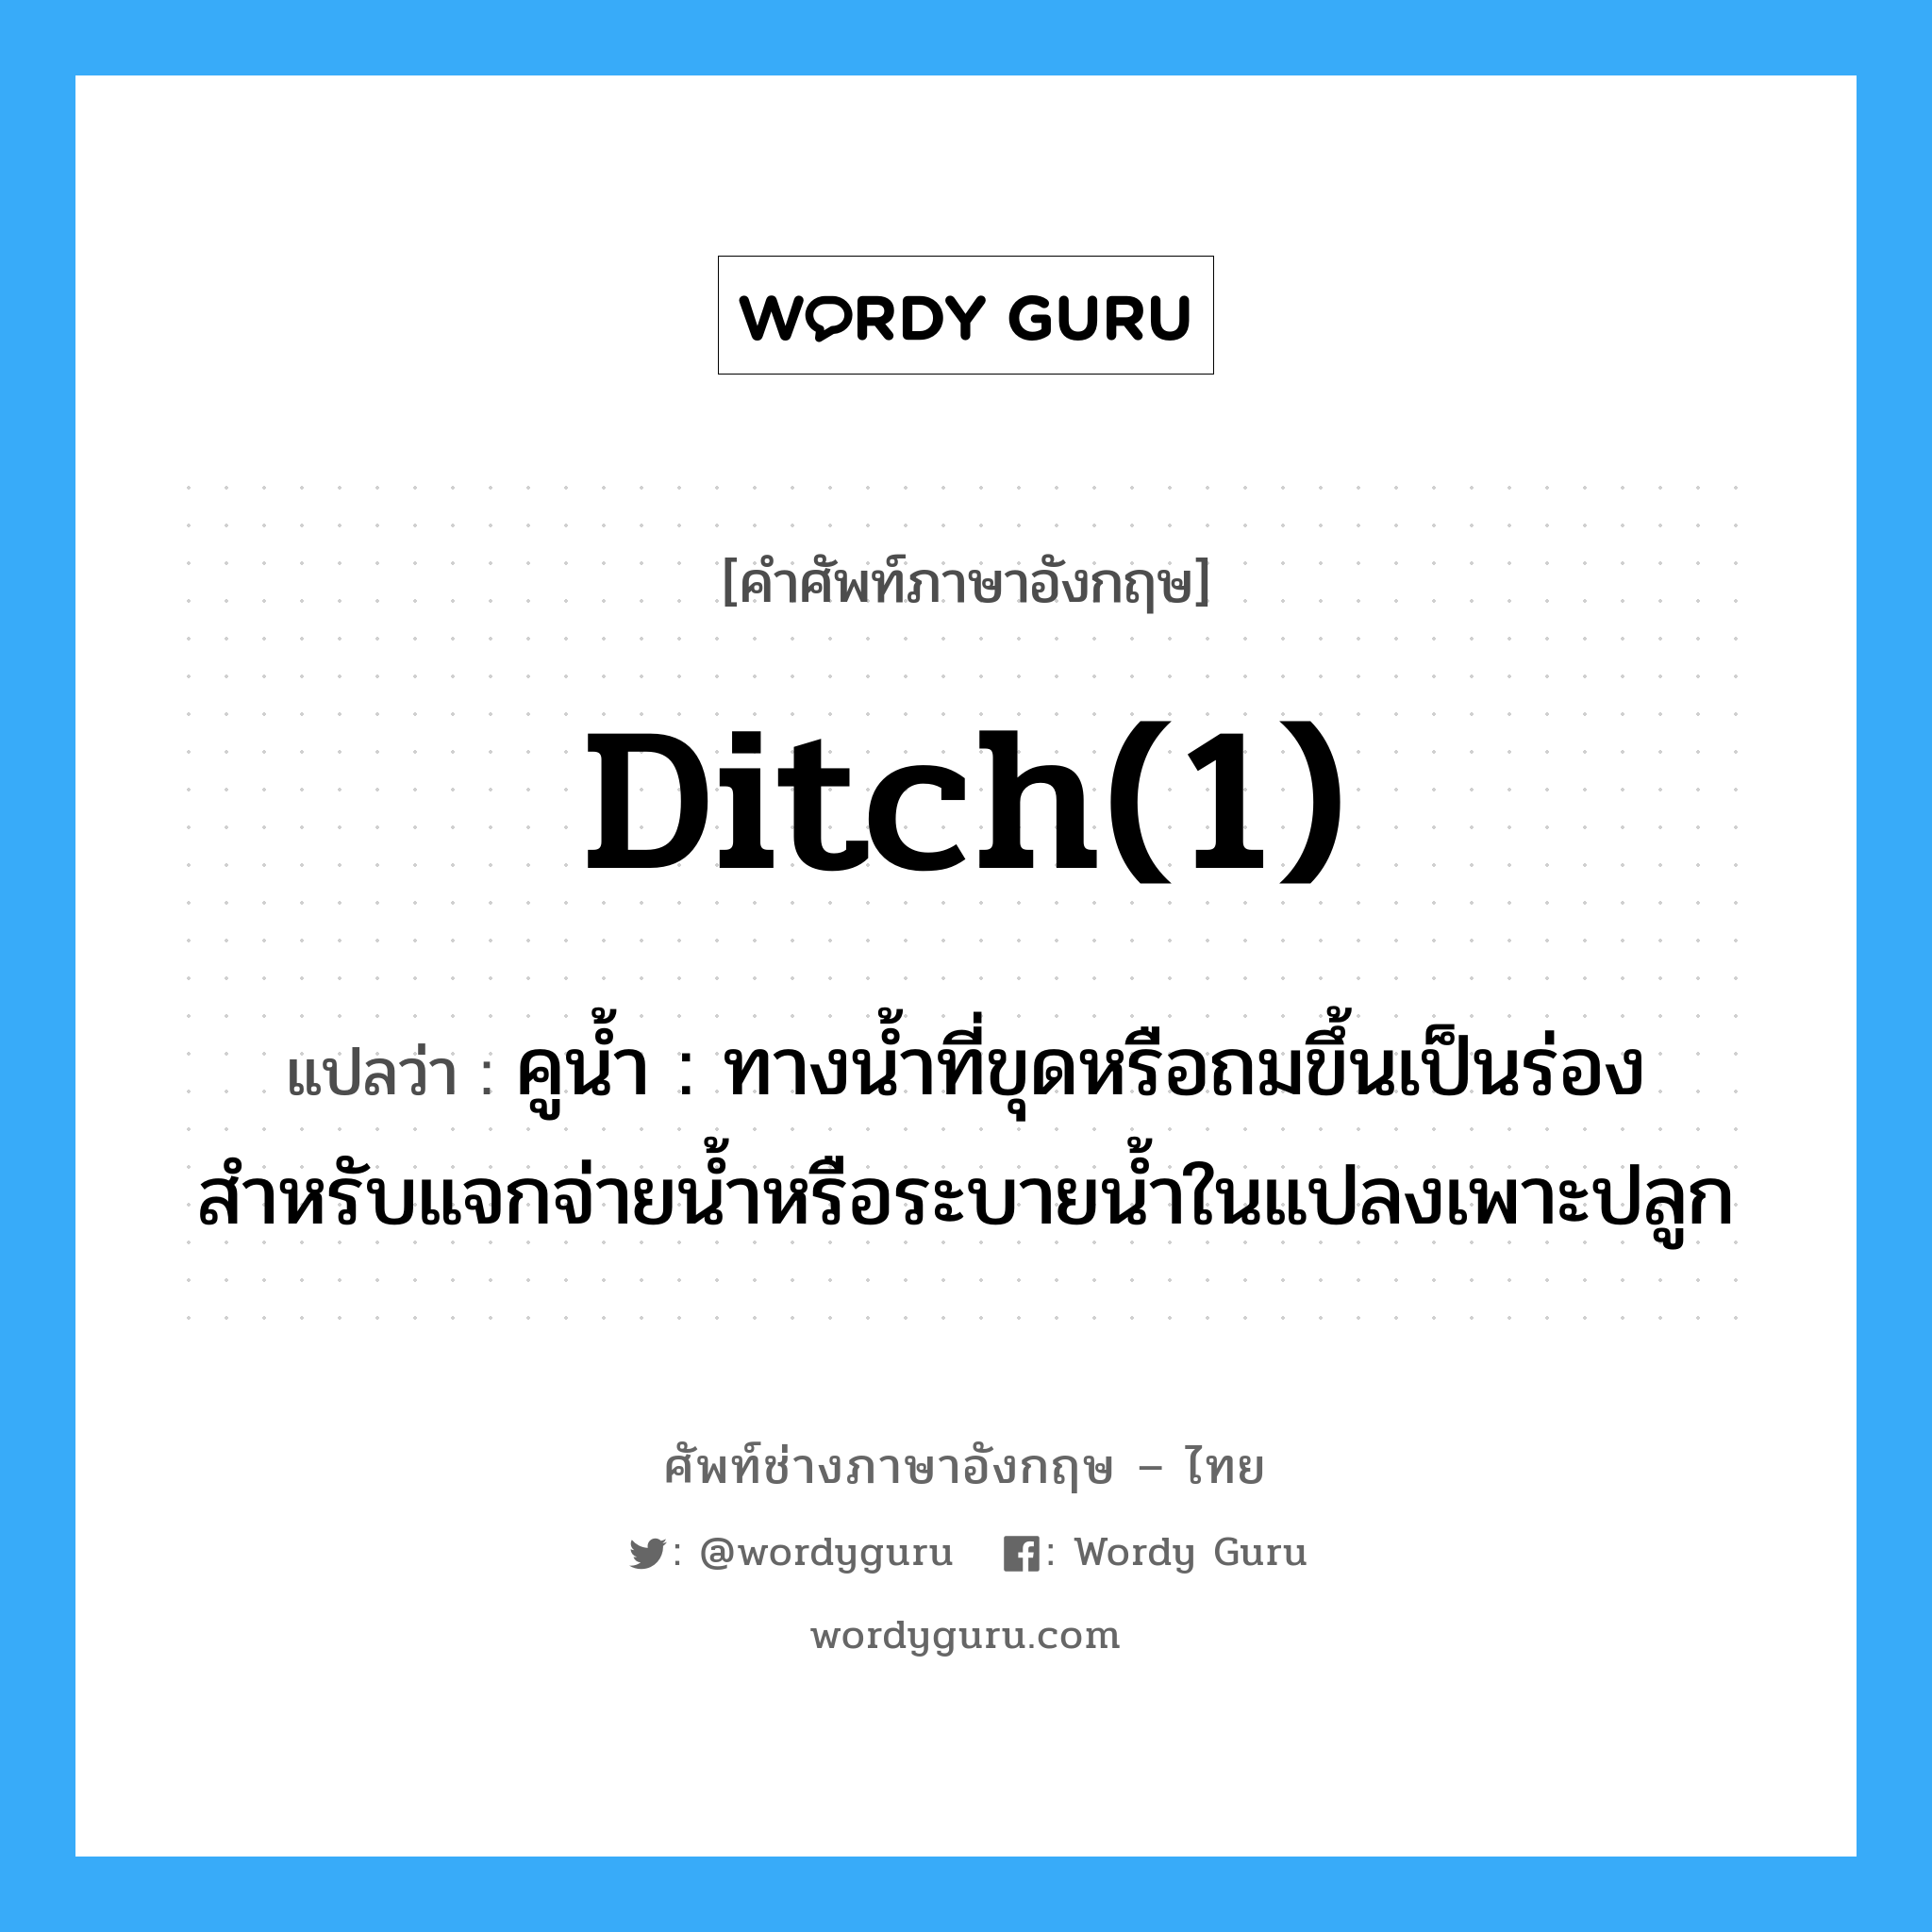 ditch(1) แปลว่า?, คำศัพท์ช่างภาษาอังกฤษ - ไทย ditch(1) คำศัพท์ภาษาอังกฤษ ditch(1) แปลว่า คูน้ำ : ทางน้ำที่ขุดหรือถมขึ้นเป็นร่อง สำหรับแจกจ่ายน้ำหรือระบายน้ำในแปลงเพาะปลูก